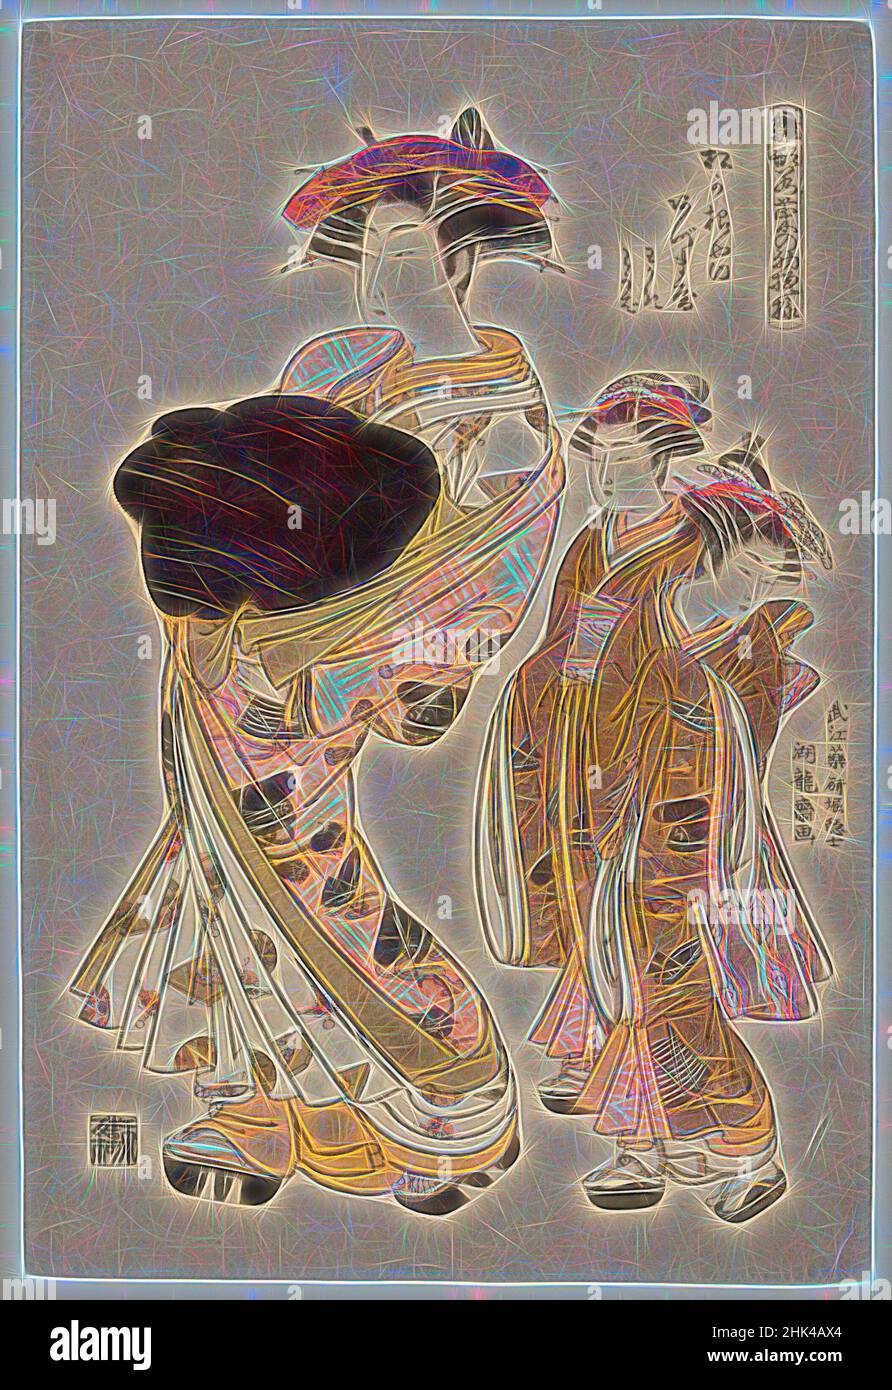 Inspiré par Azumaya, une beauté Yoshiwara de la maison de thé Matsu Hanaya suivie par deux attacants, de la série: Hinagata Wakana no Hatsu moyo 'les premiers dessins Dyed pour les herbes de printemps.', Isoda Koryusai, japonais, ca. 1766-1788, impression couleur sur papier, Japon, env. 1777, période Edo, 15 1/2 x, réimaginé par Artotop. L'art classique réinventé avec une touche moderne. Conception de lumière chaleureuse et gaie, de luminosité et de rayonnement de lumière. La photographie s'inspire du surréalisme et du futurisme, embrassant l'énergie dynamique de la technologie moderne, du mouvement, de la vitesse et révolutionne la culture Banque D'Images